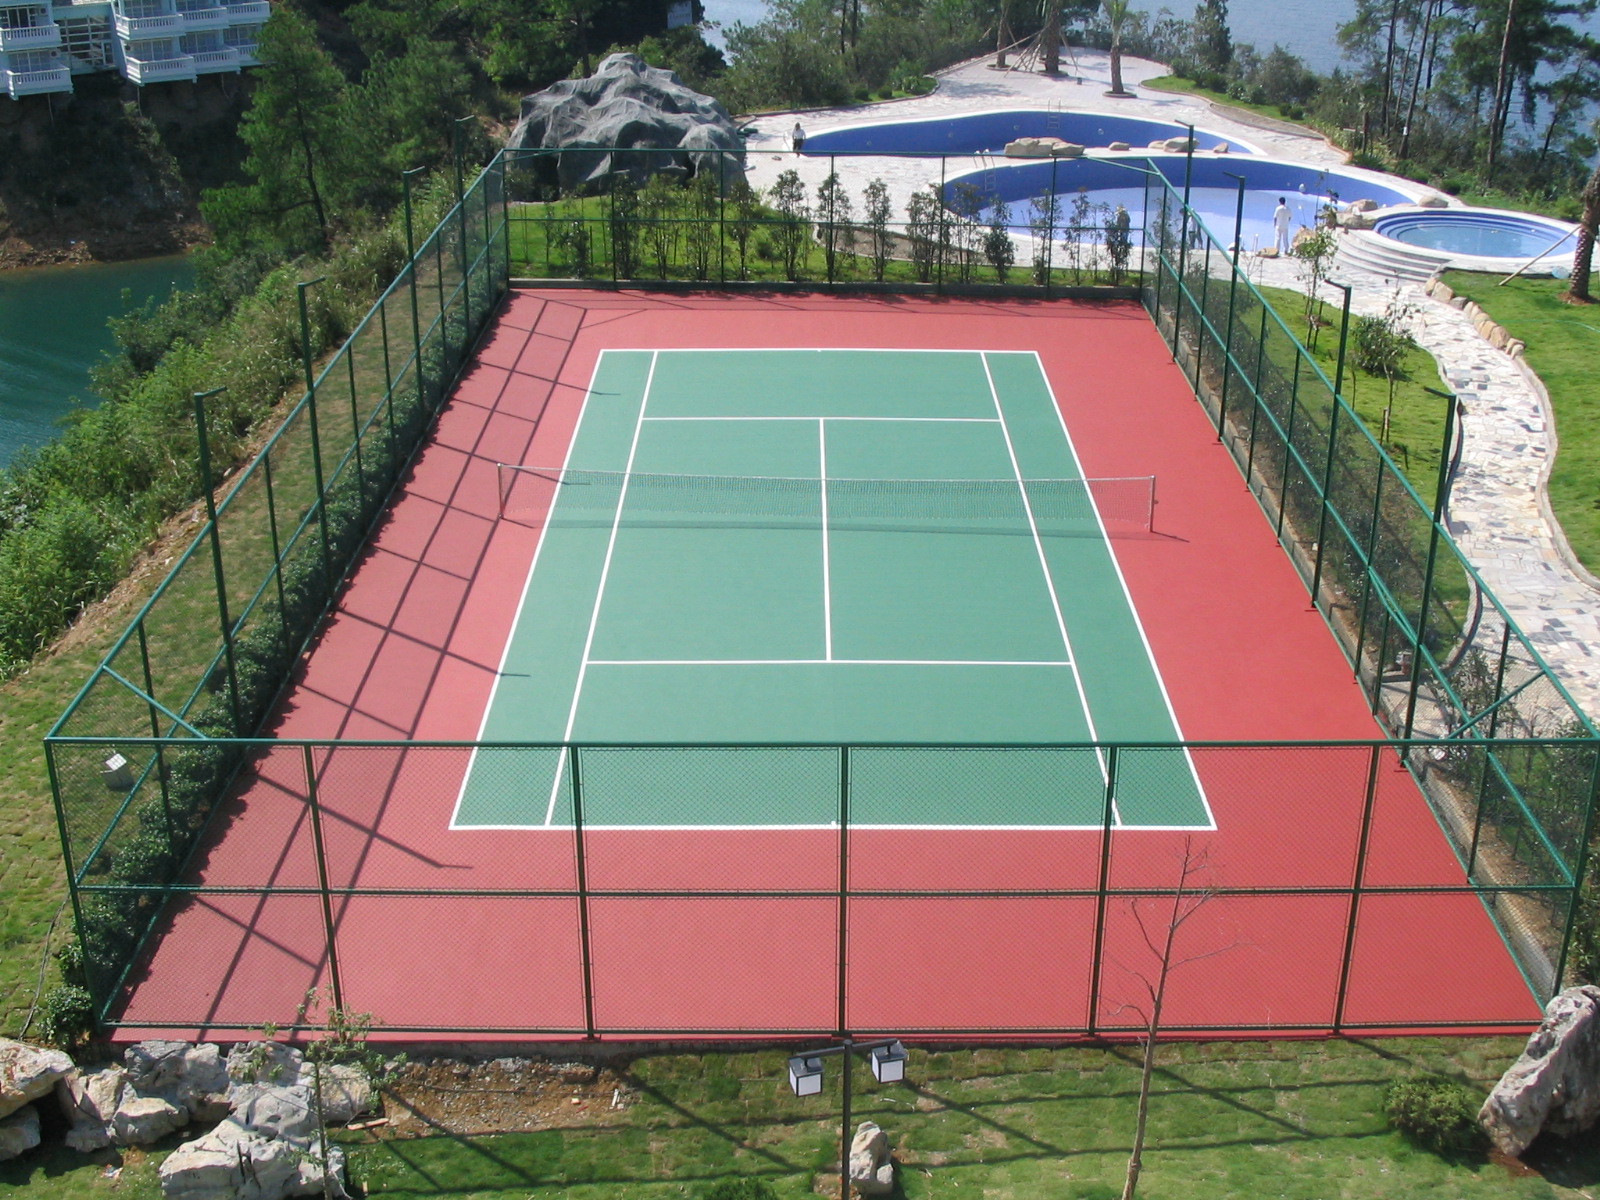 【提供硅pu材料】硅pu篮球场施工 硅pu网球场建造 硅pu网球场铺设